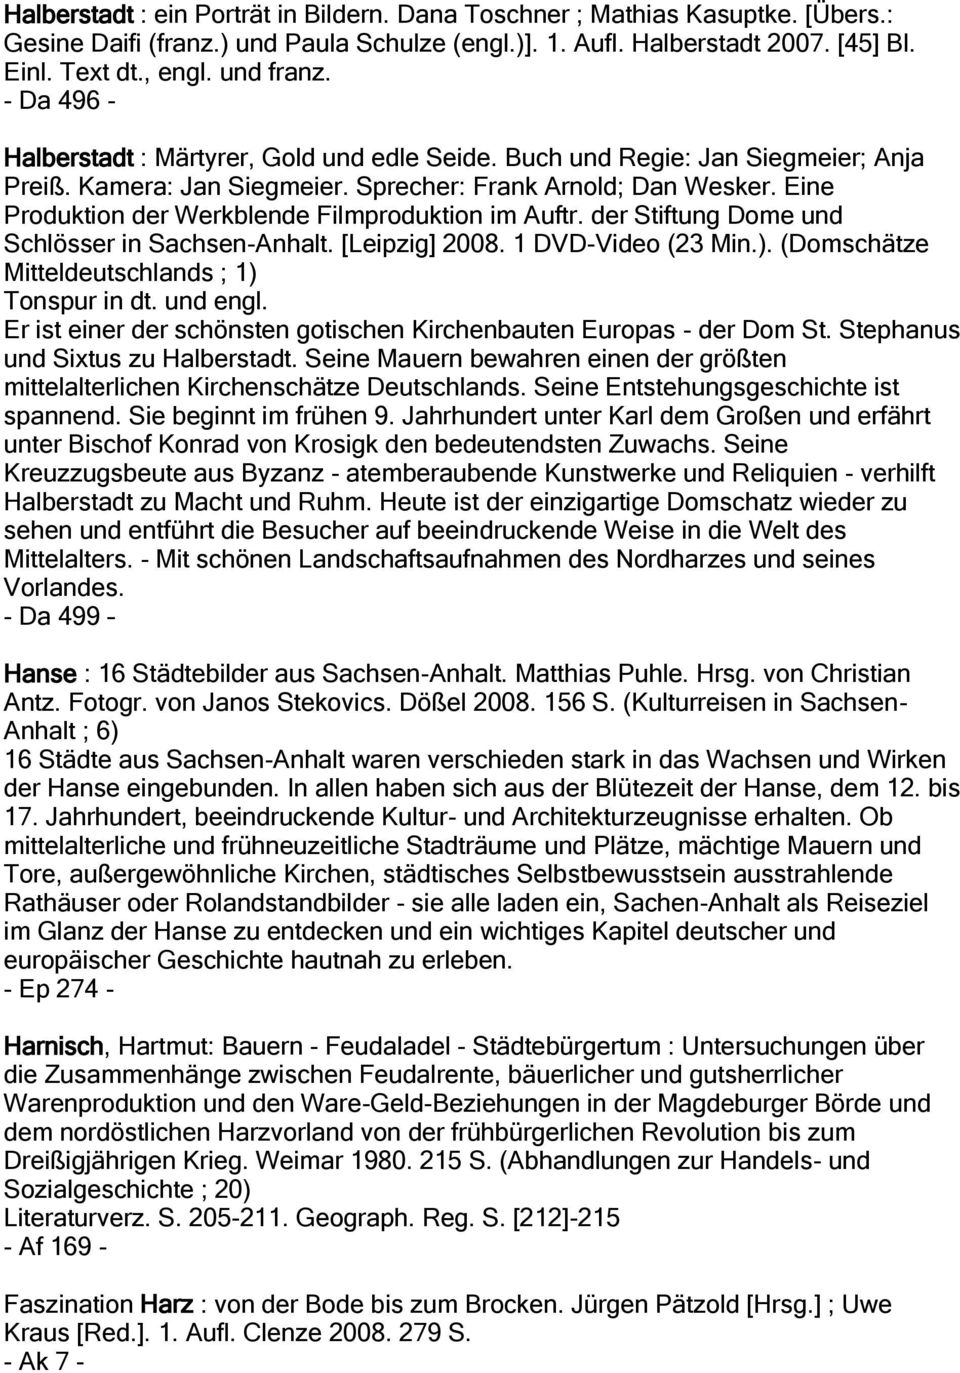 Eine Produktion der Werkblende Filmproduktion im Auftr. der Stiftung Dome und Schlösser in Sachsen-Anhalt. [Leipzig] 2008. 1 DVD-Video (23 Min.). (Domschätze Mitteldeutschlands ; 1) Tonspur in dt.